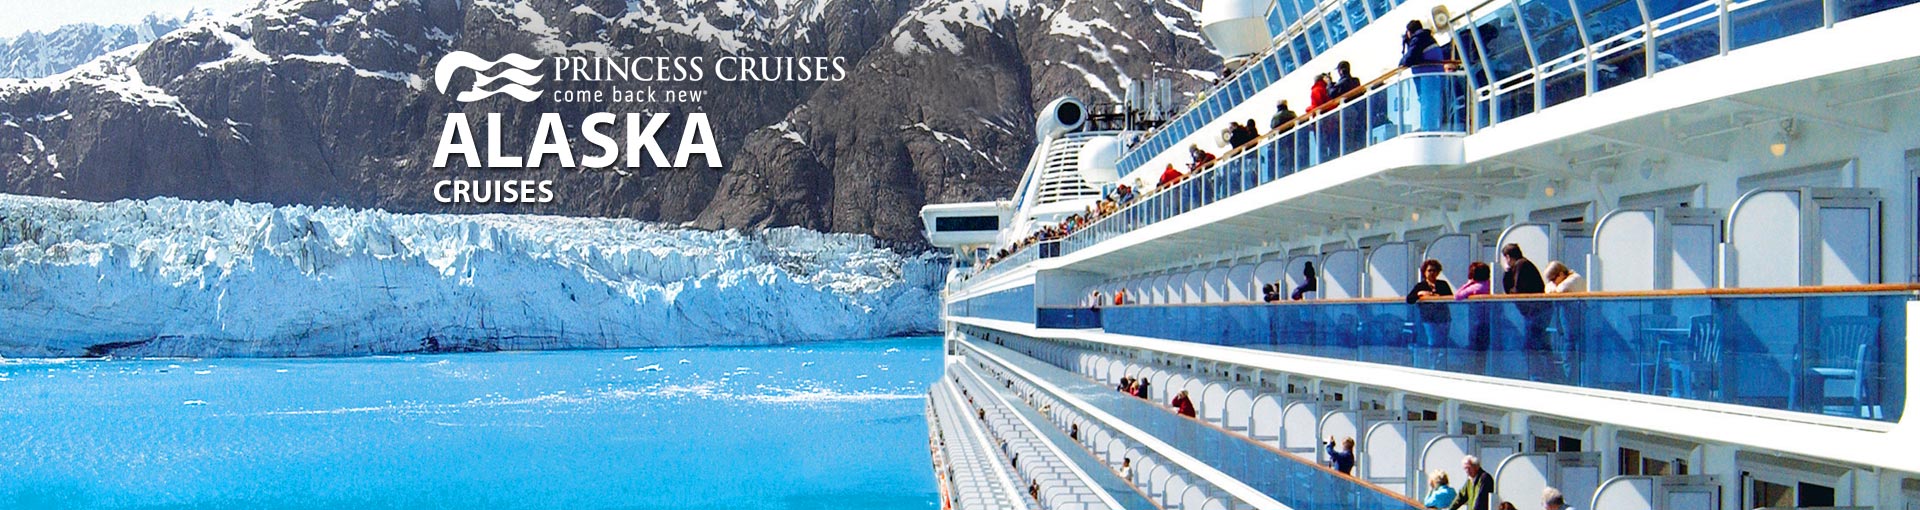 Princess Alaska Cruises, 2017 and 2018 Alaskan Princess ...